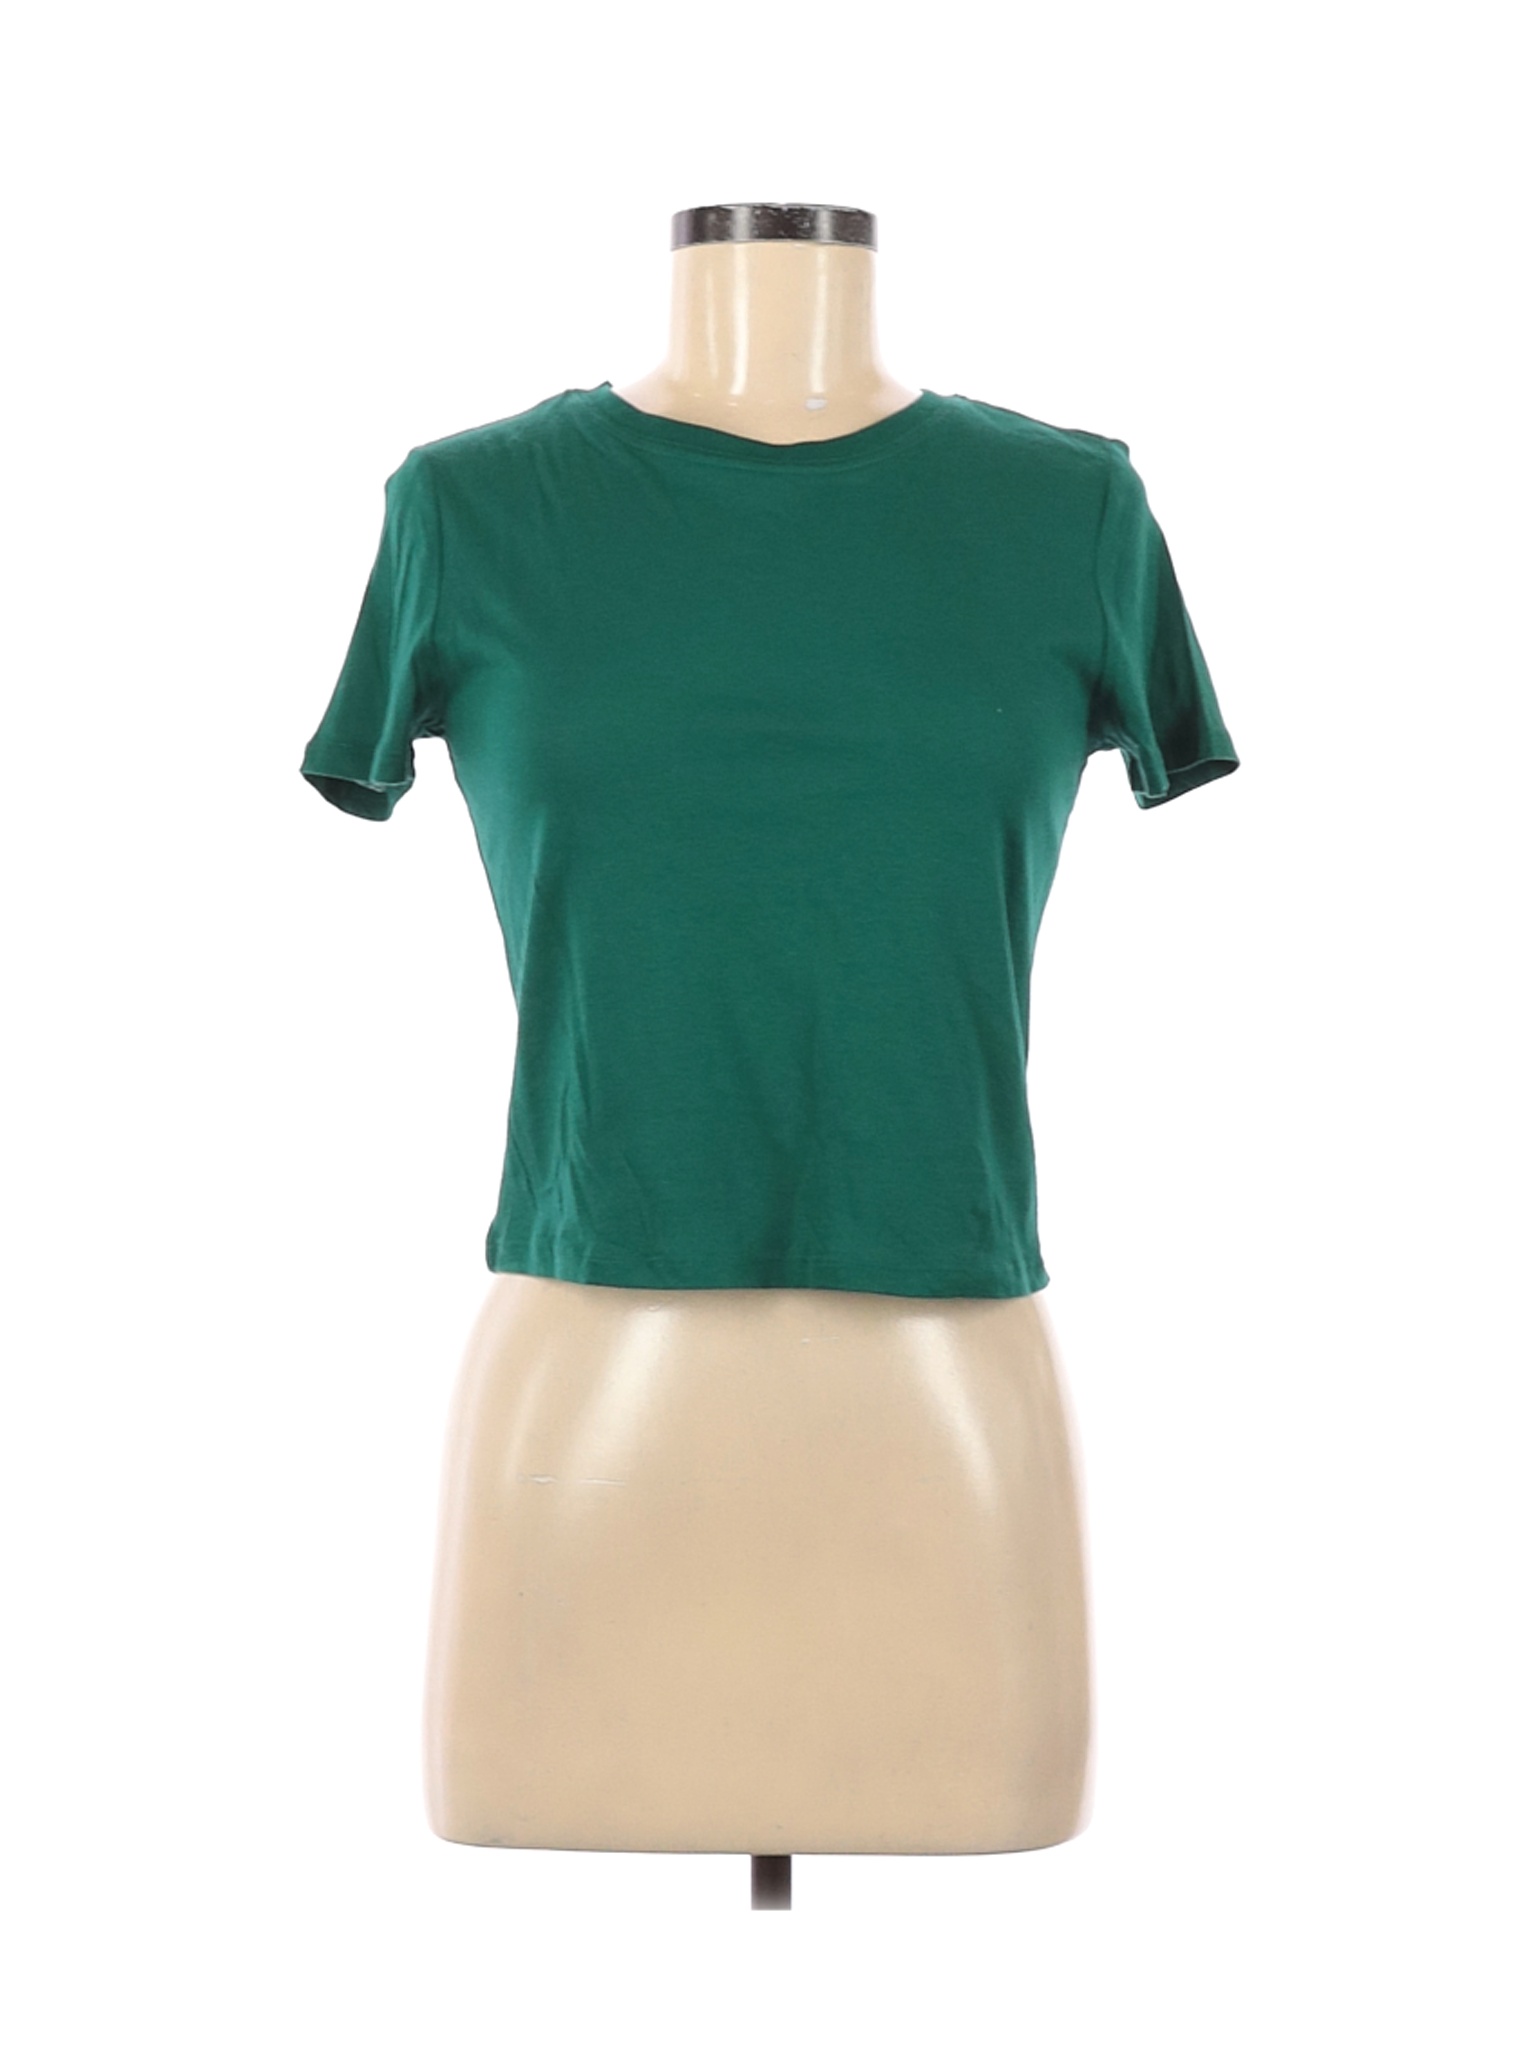 Forever 21 Women Green Short Sleeve T-Shirt M | eBay